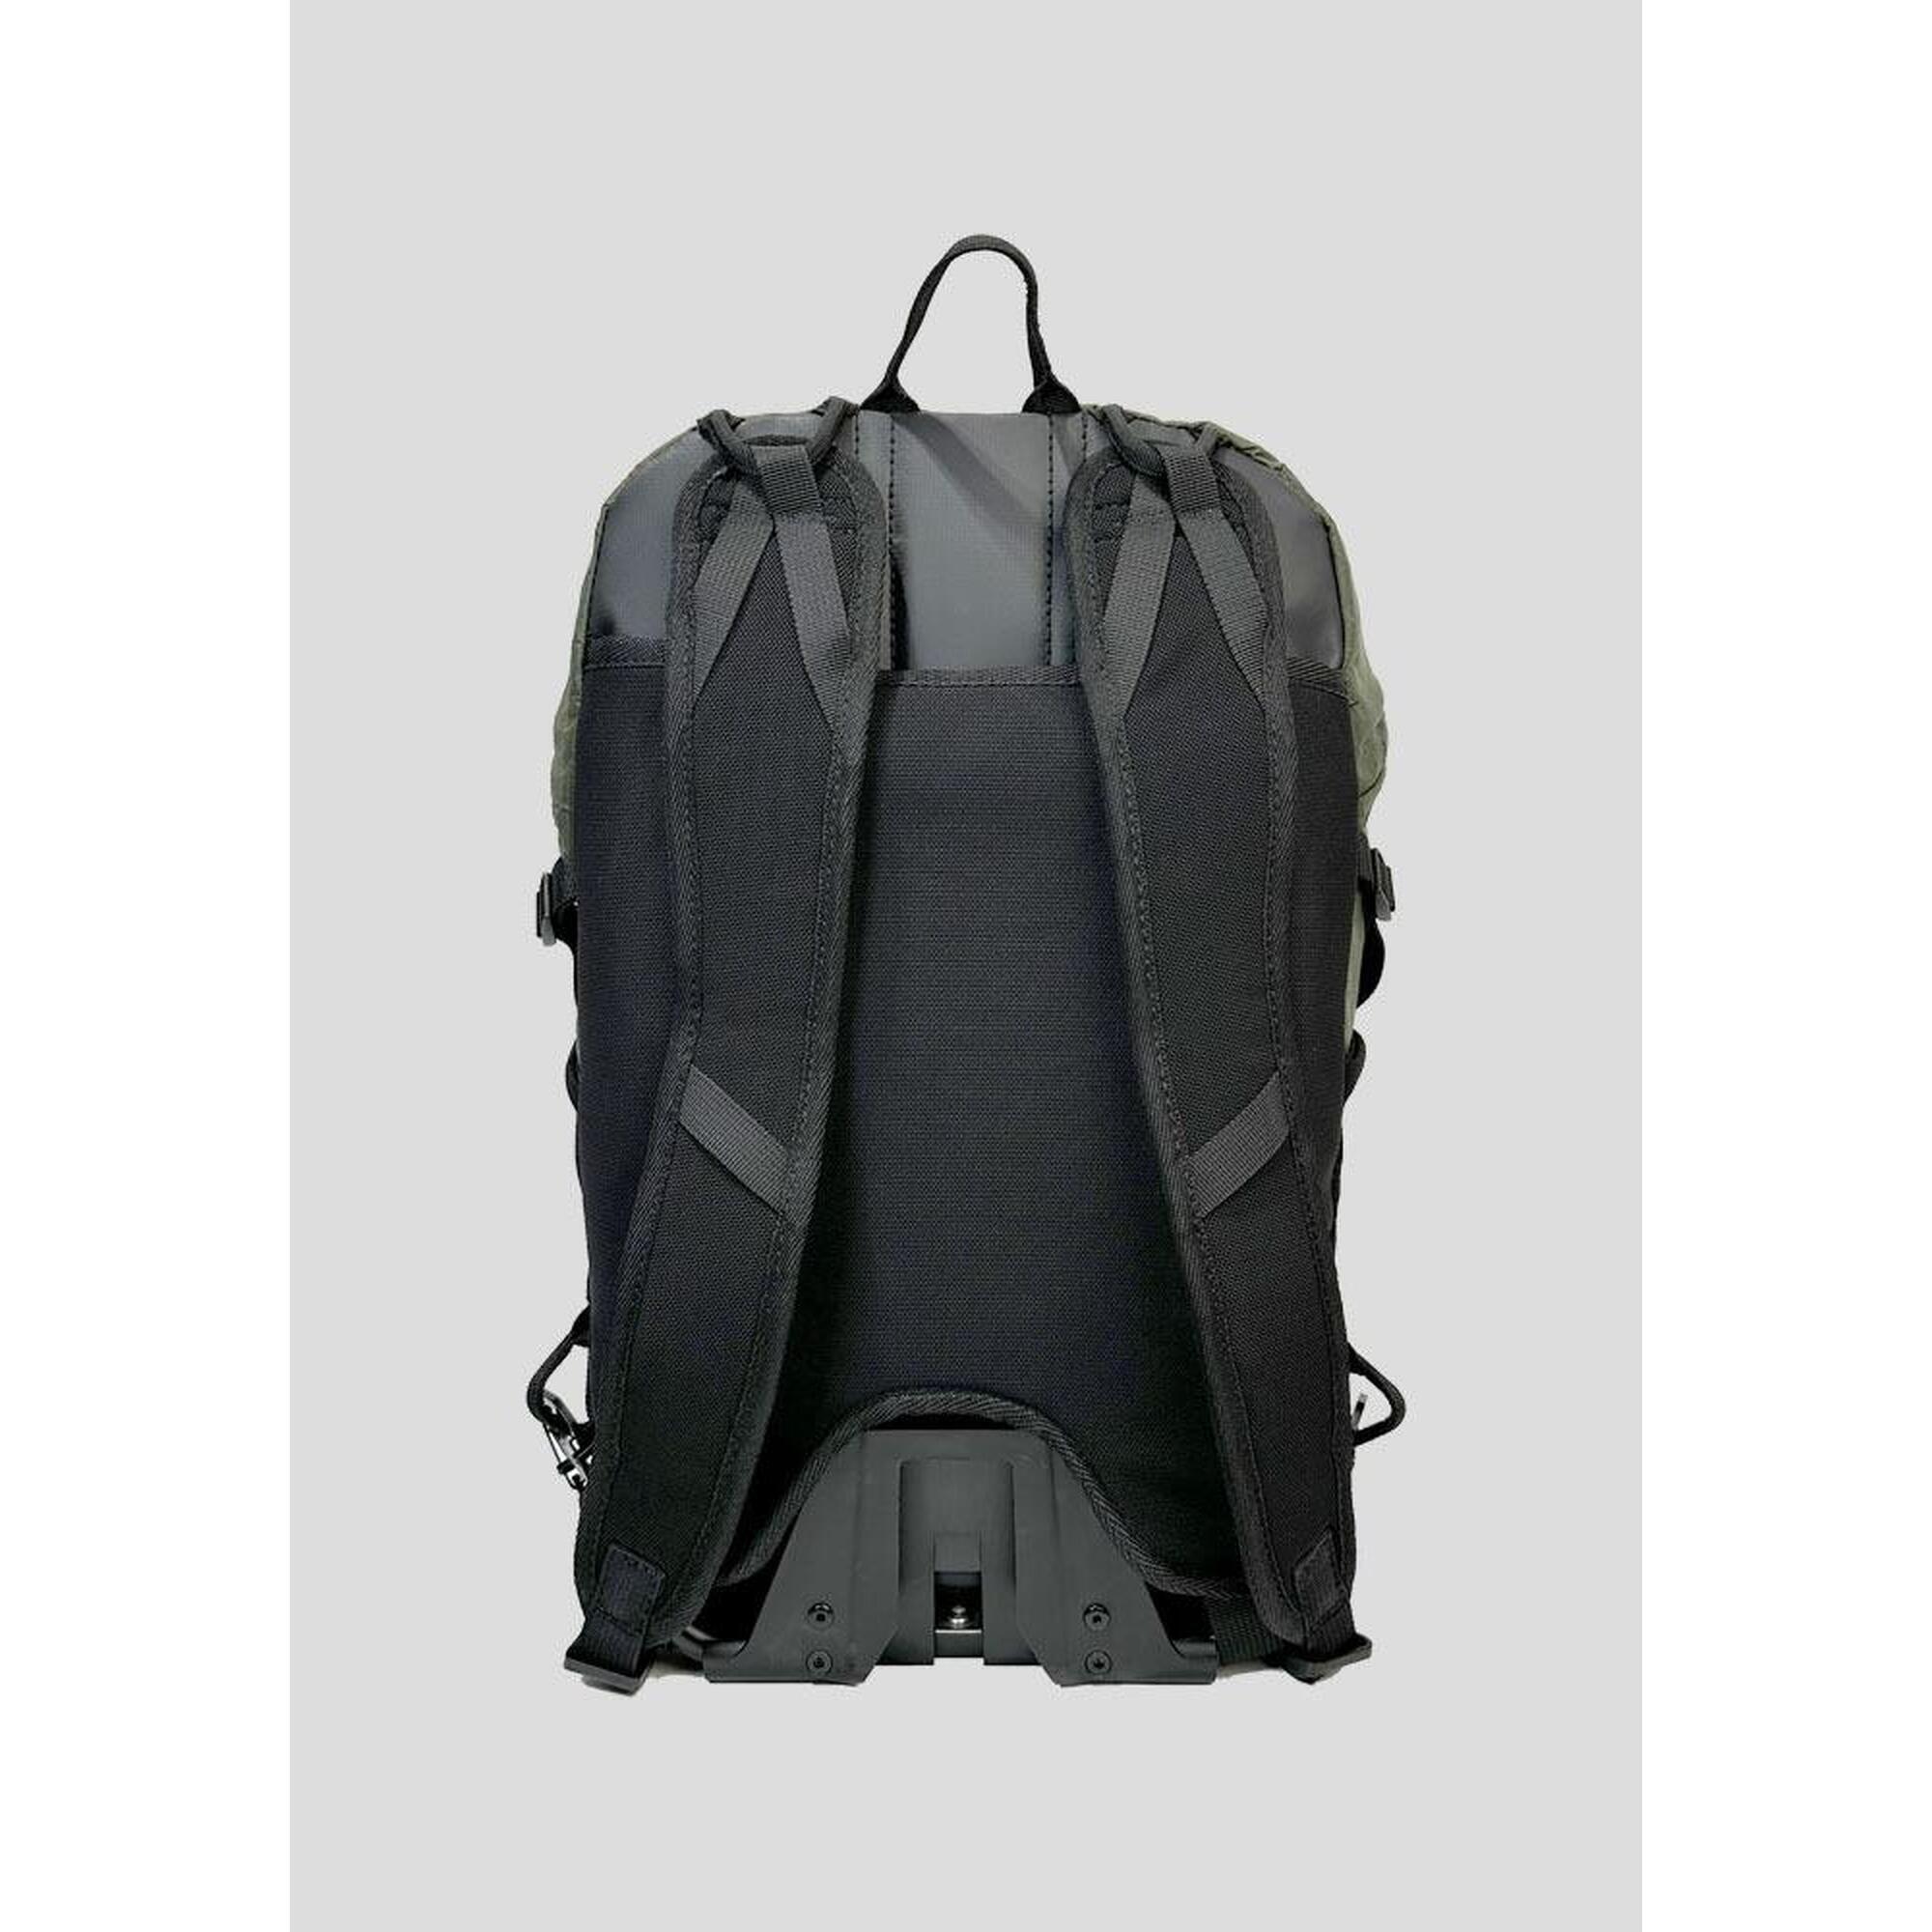 HEXA.GO Ultra Light Backpack 12L - Dark Green